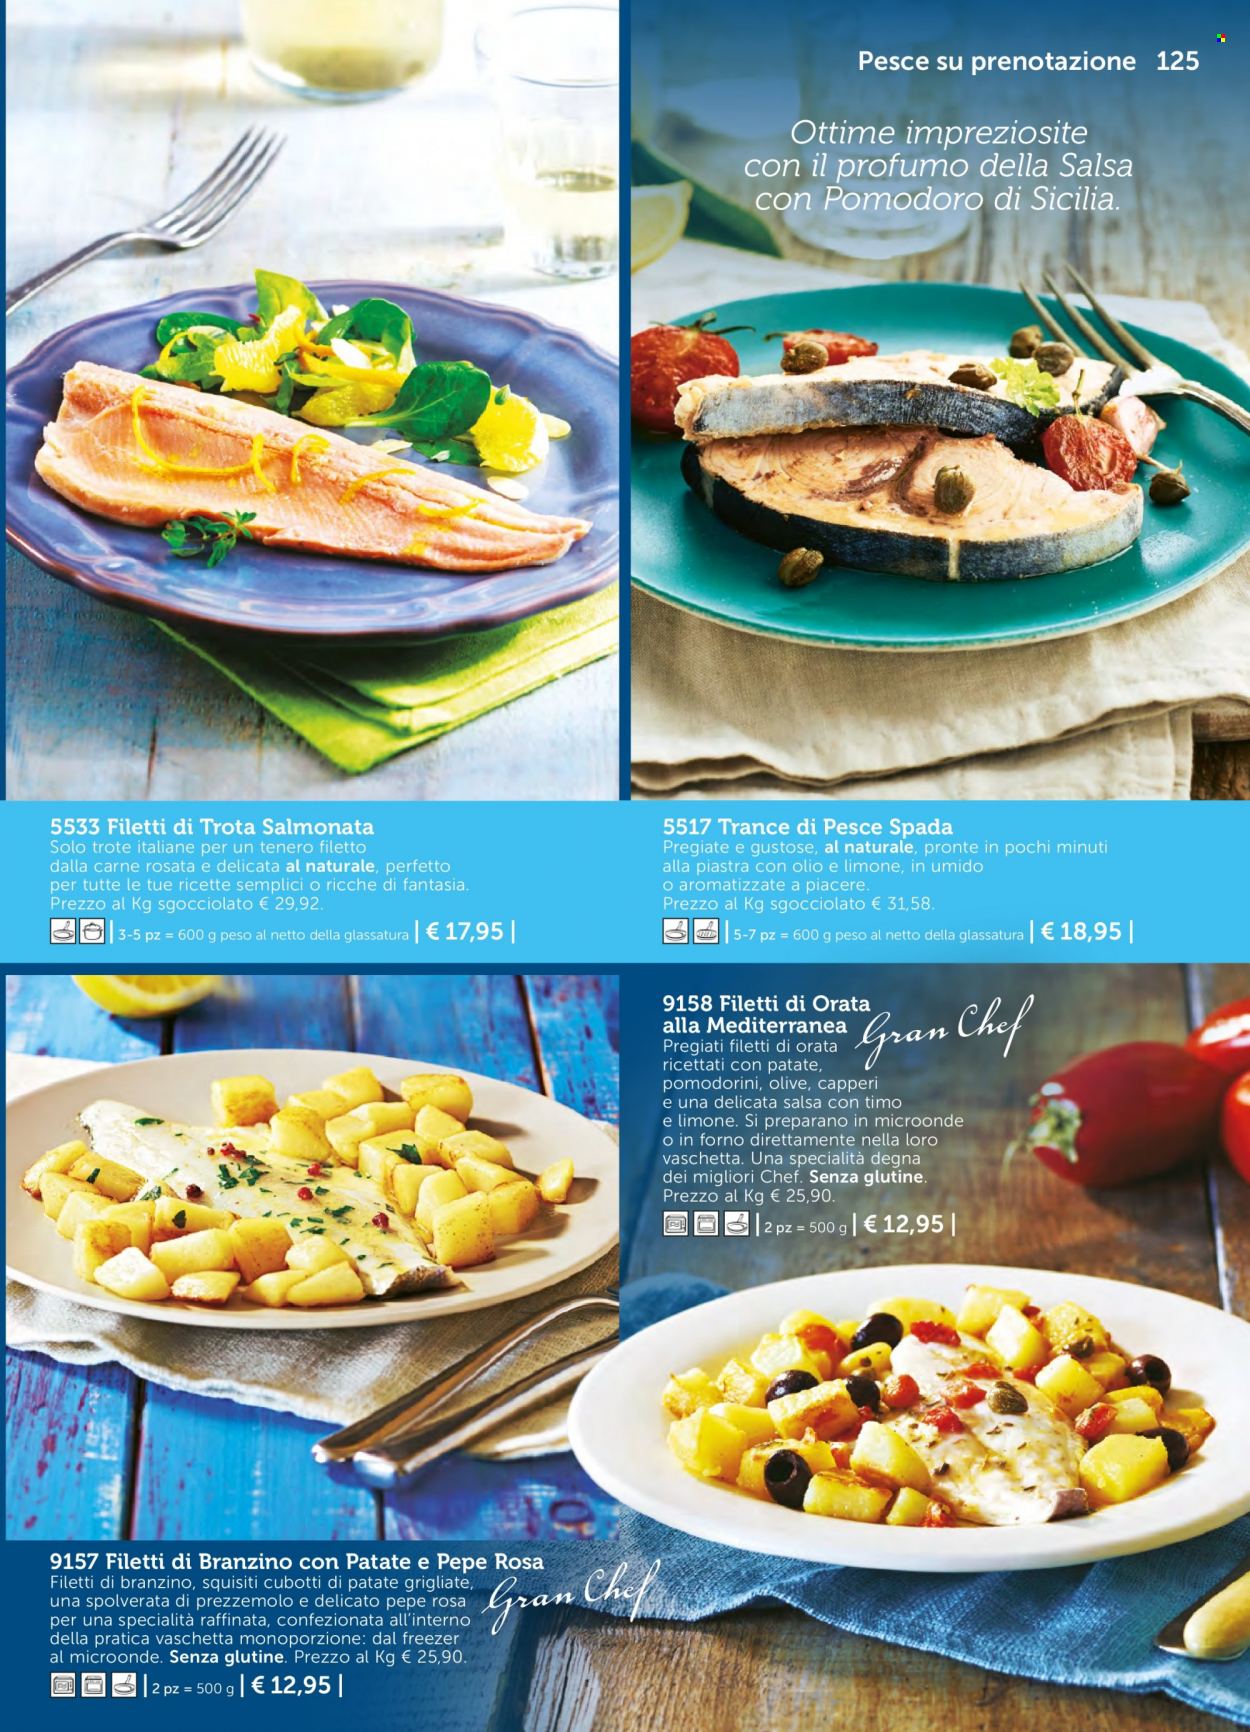 thumbnail - Volantino Bofrost - Prodotti in offerta - pesce spada, trota salmonata, orata, filetti di branzino, patate al forno, patate grigliate. Pagina 125.